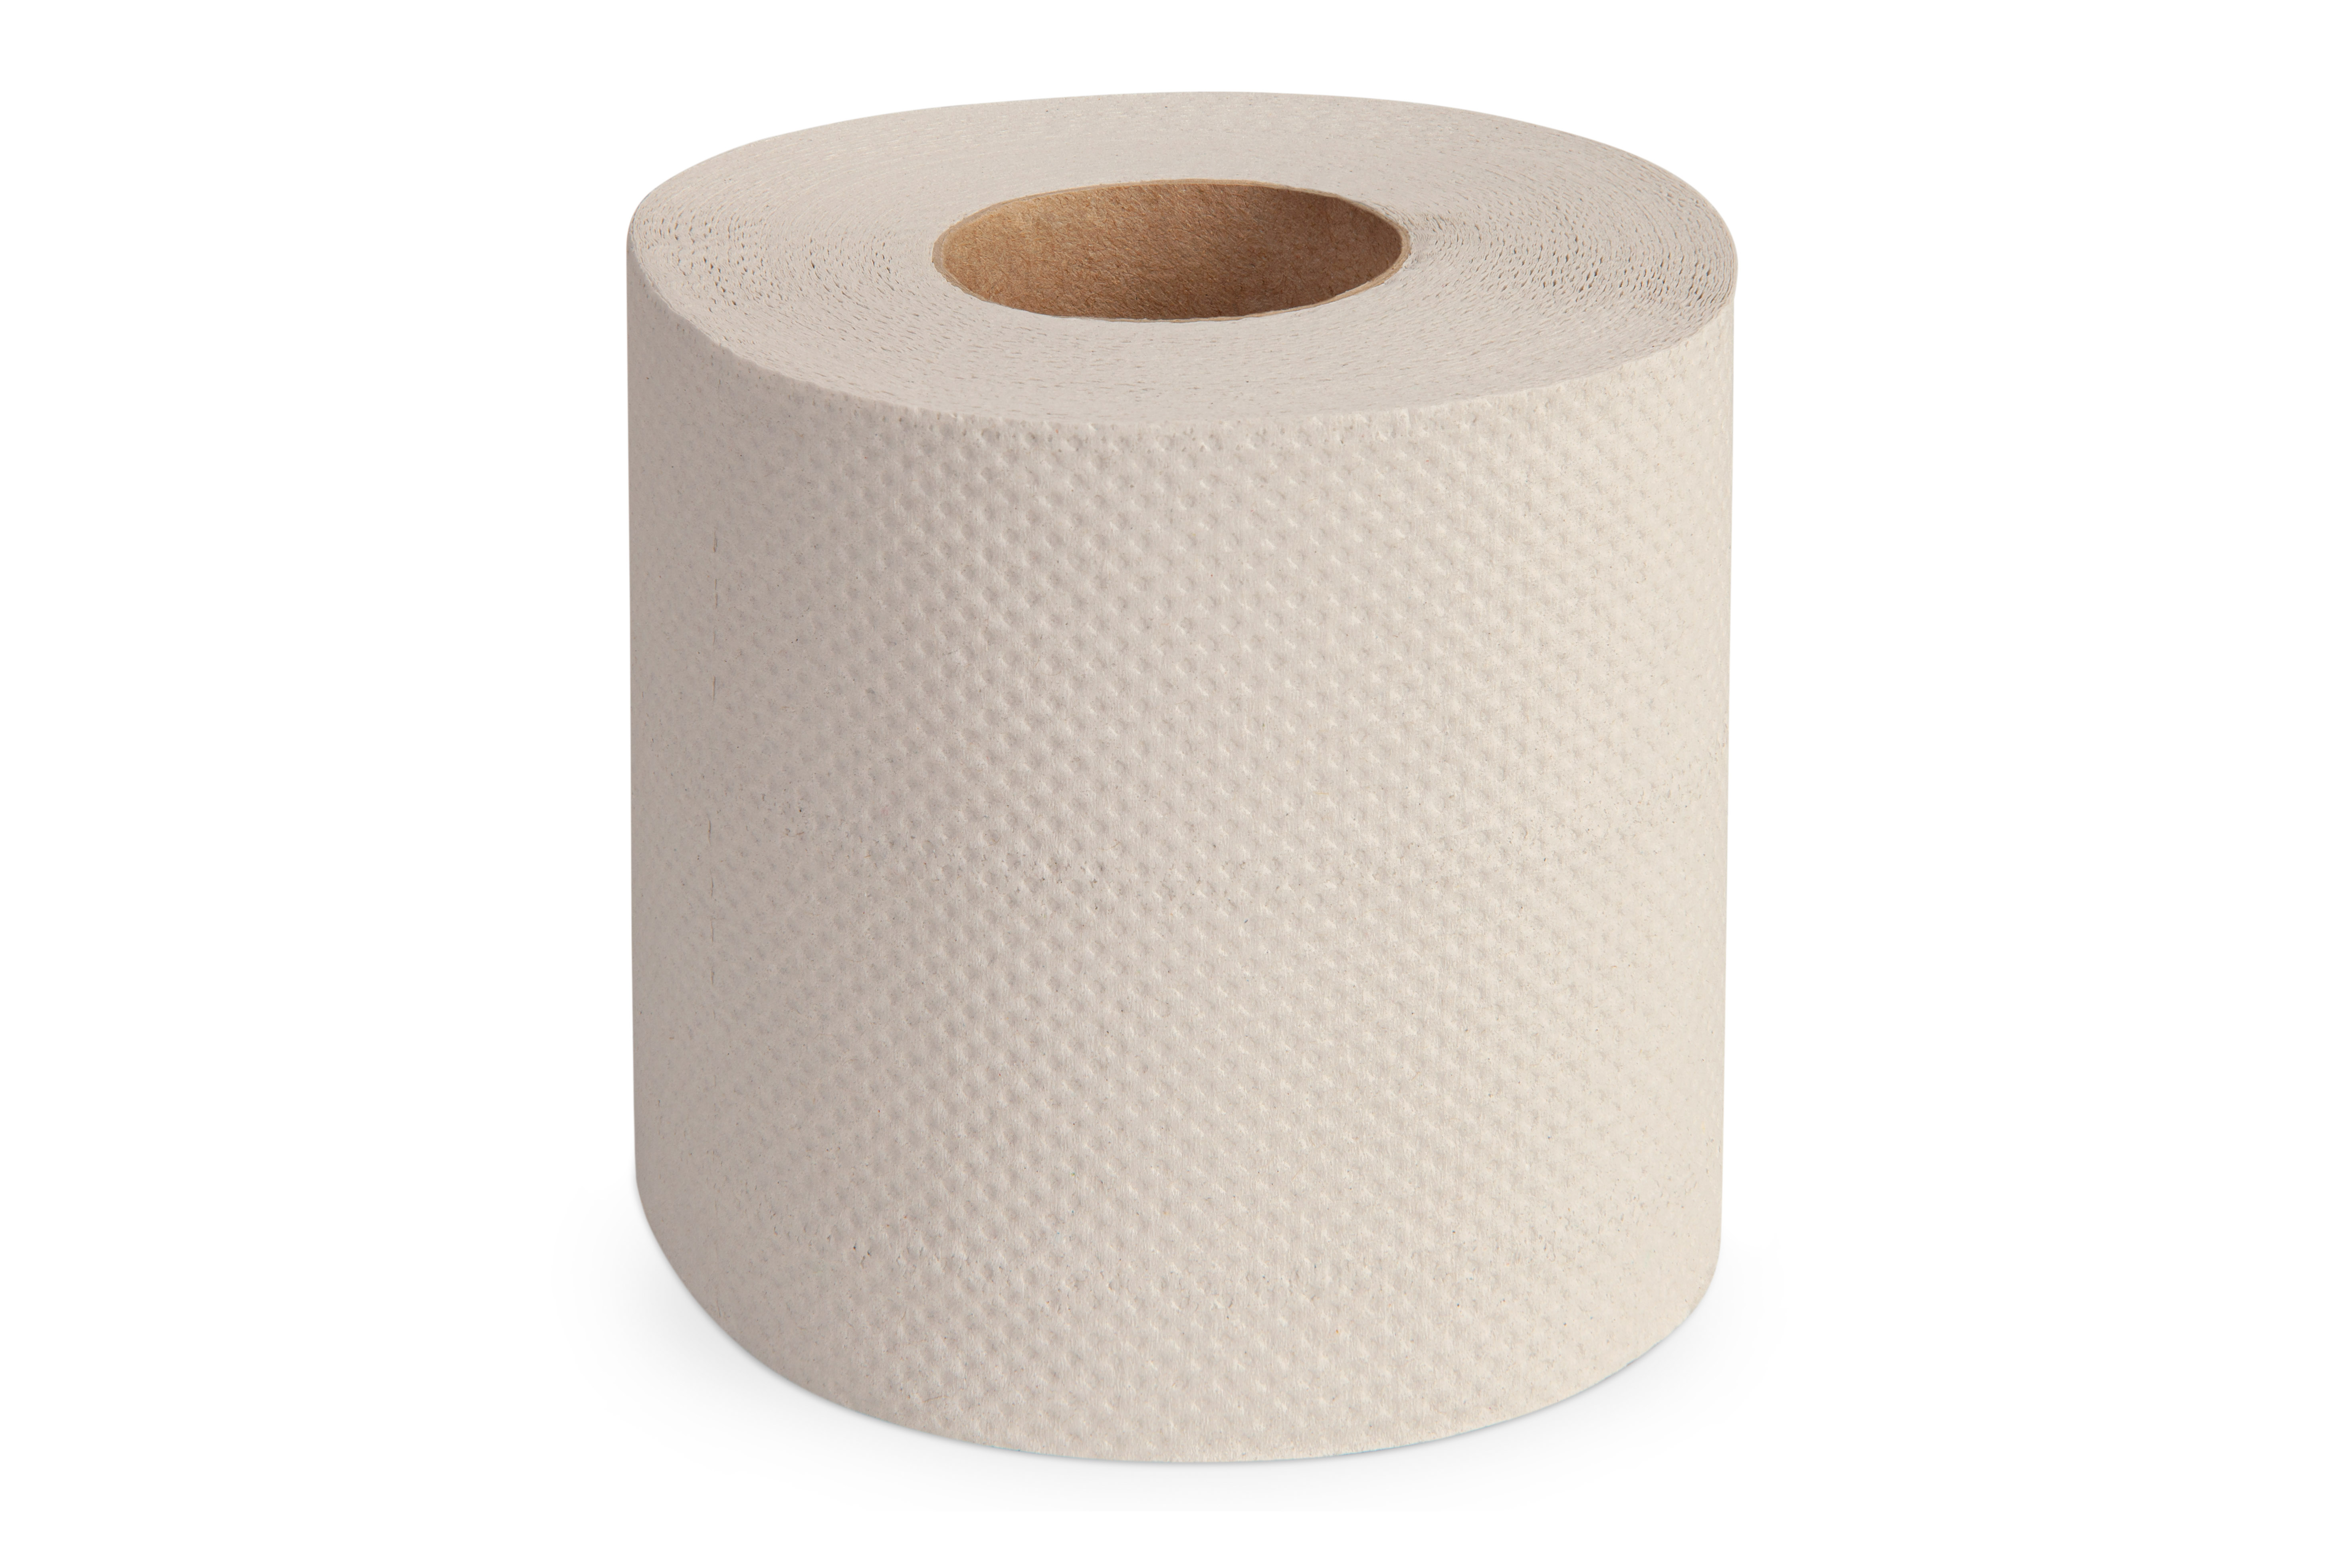 Toilettenpapier Kleinrolle, 64 Rollen, 2-lagig, 250 Blatt, Recycling